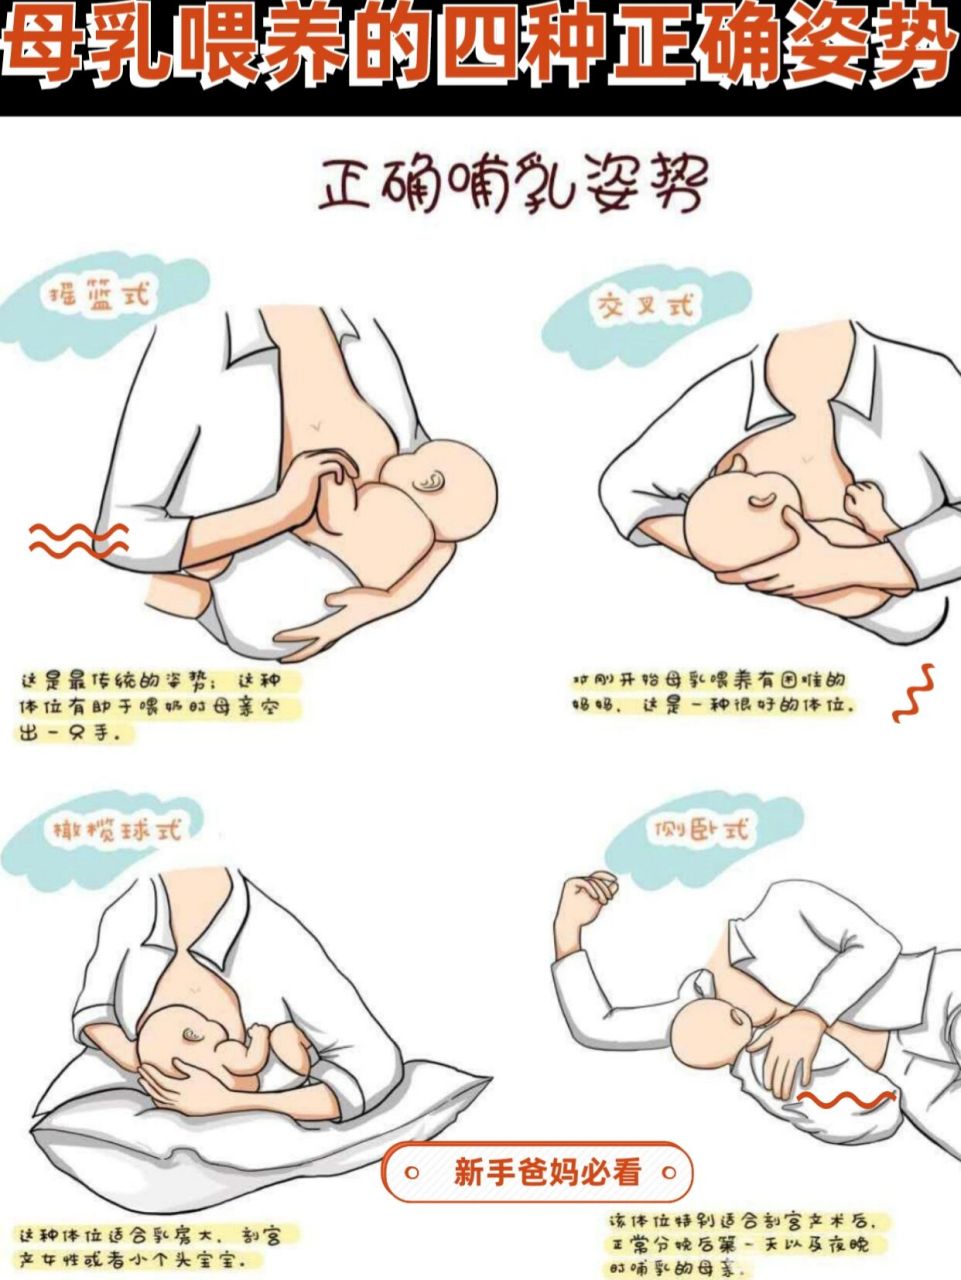 母乳喂养的四种正确姿势 母乳喂养的四种正确姿势主要分为摇篮抱法的